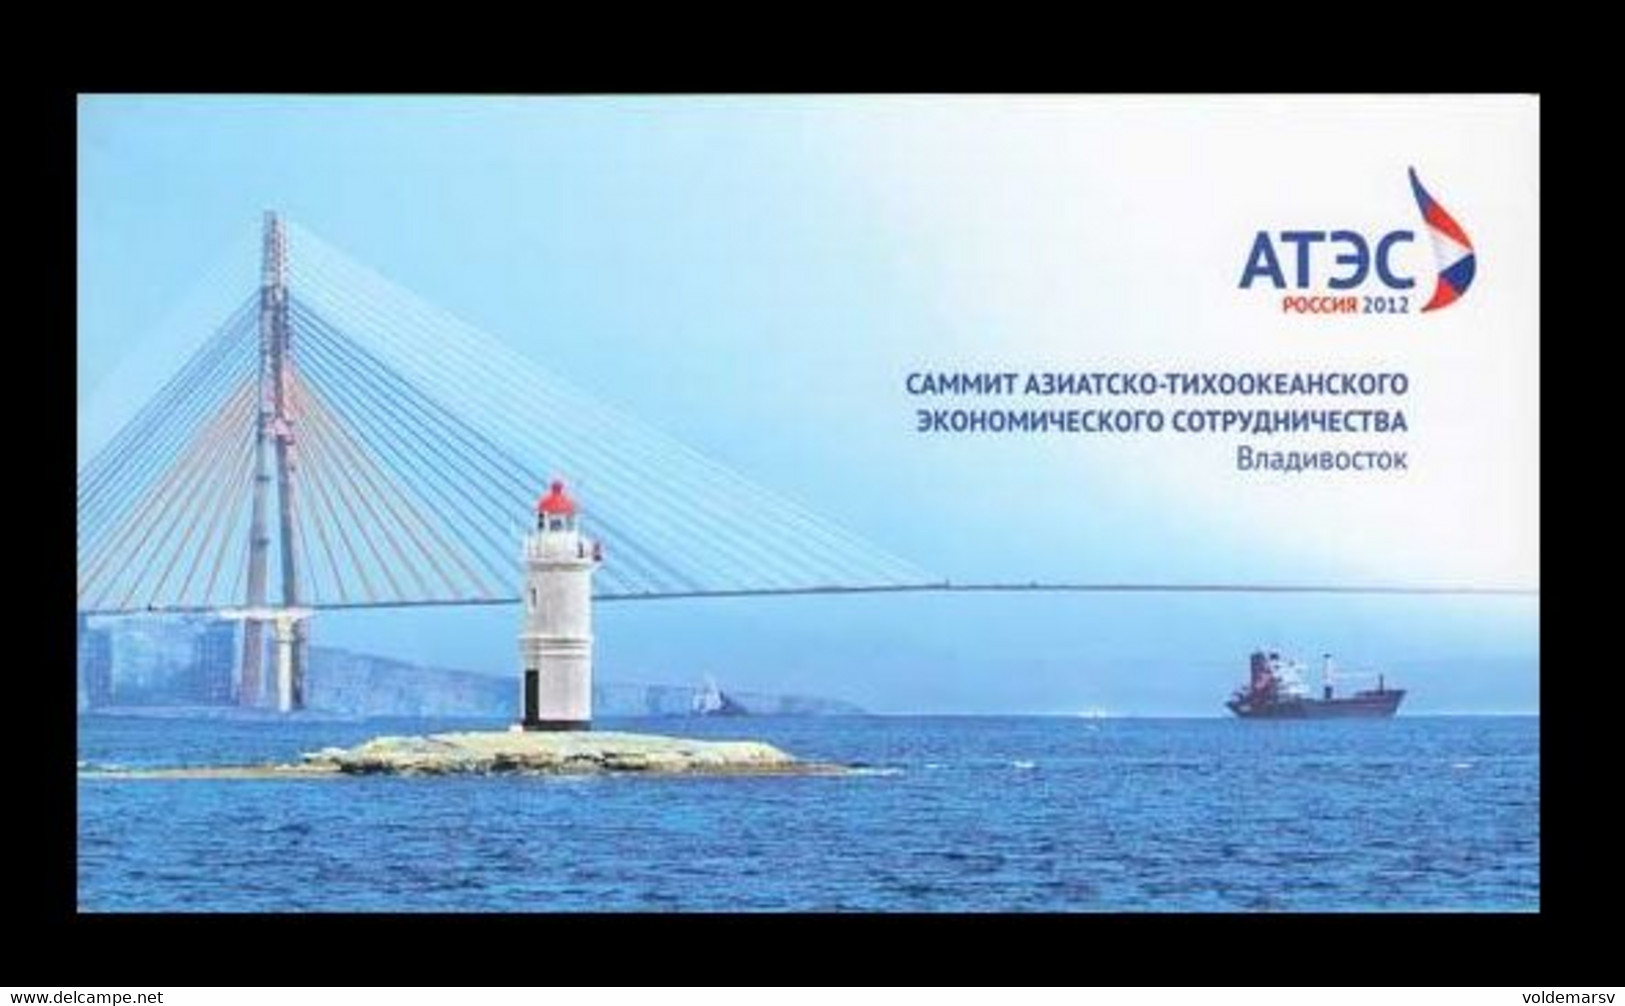 Russia 2012 Mih. 1860C APEC Russia 2012 Summit In Vladivostok (prestige Booklet) MNH ** - Ongebruikt